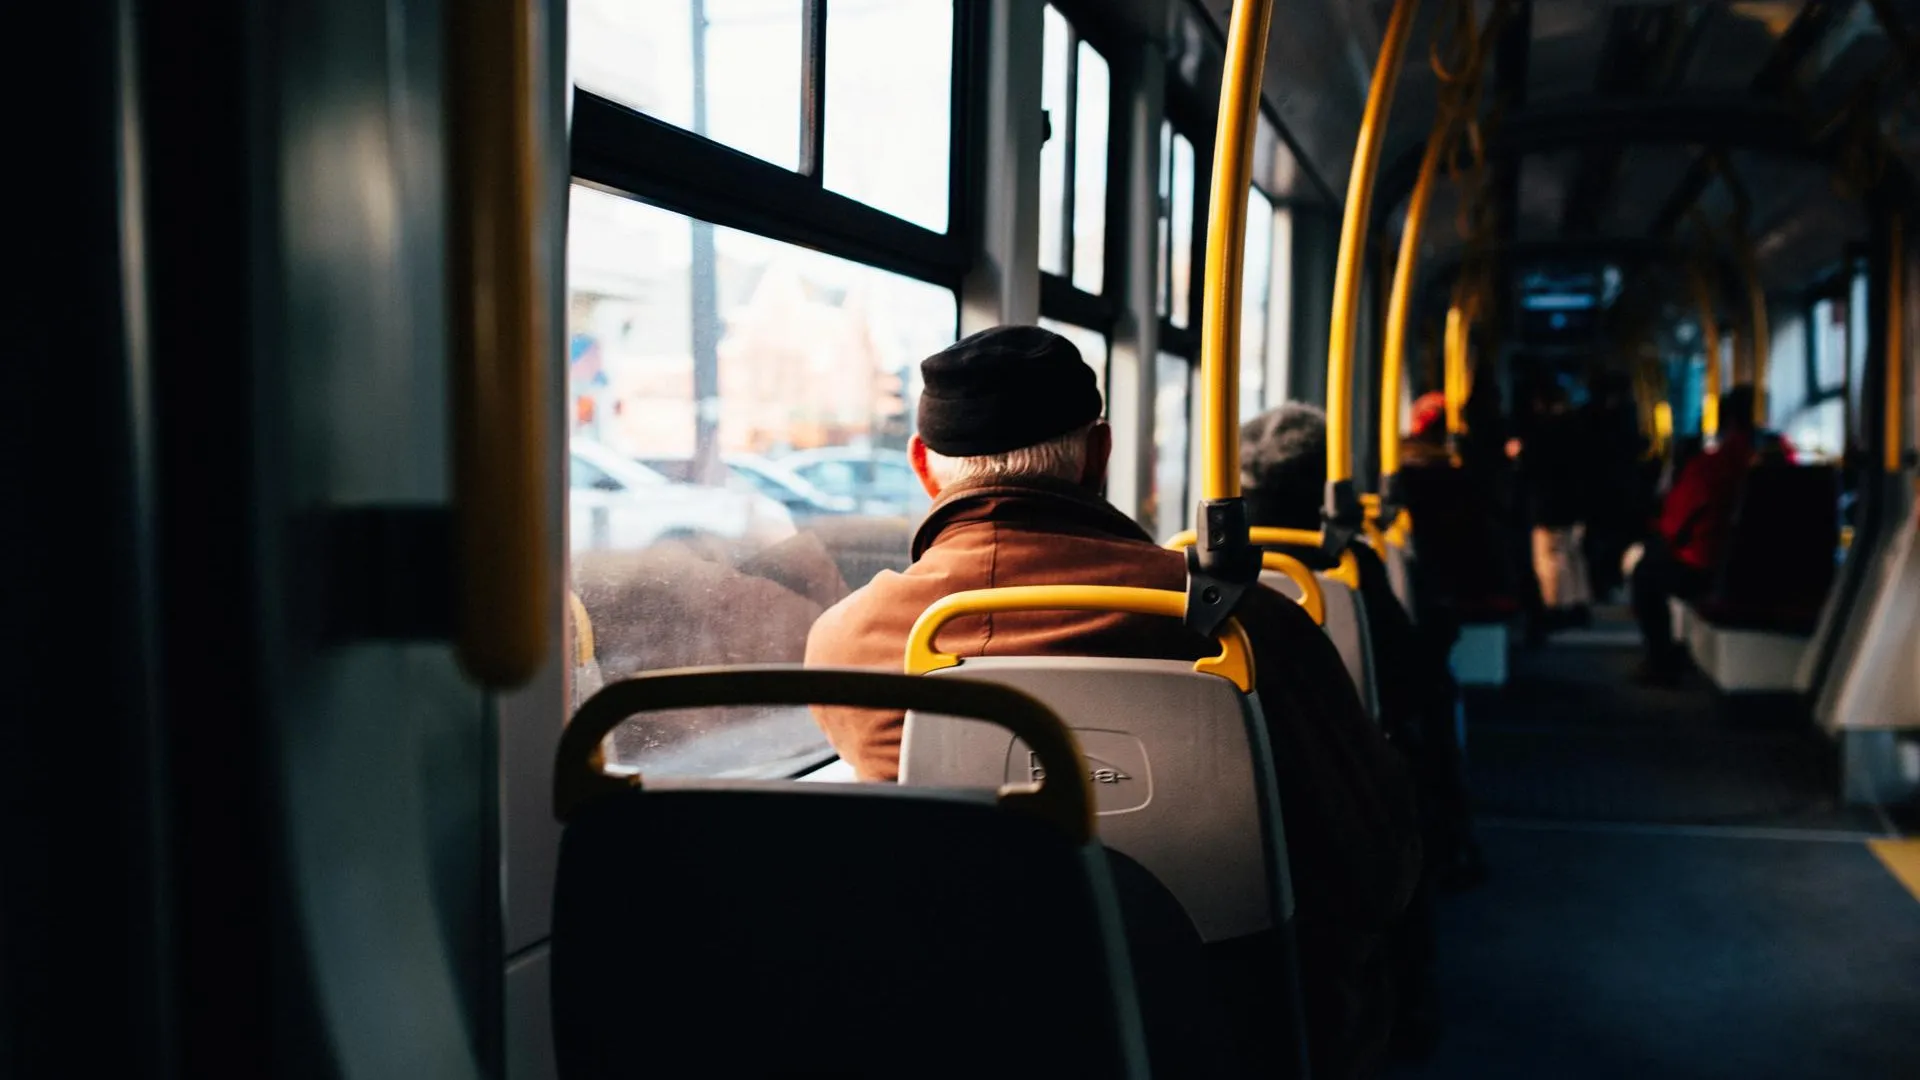 Пьяная женщина приставала к детям и разбила нос бабушке в автобусе под Ярославлем